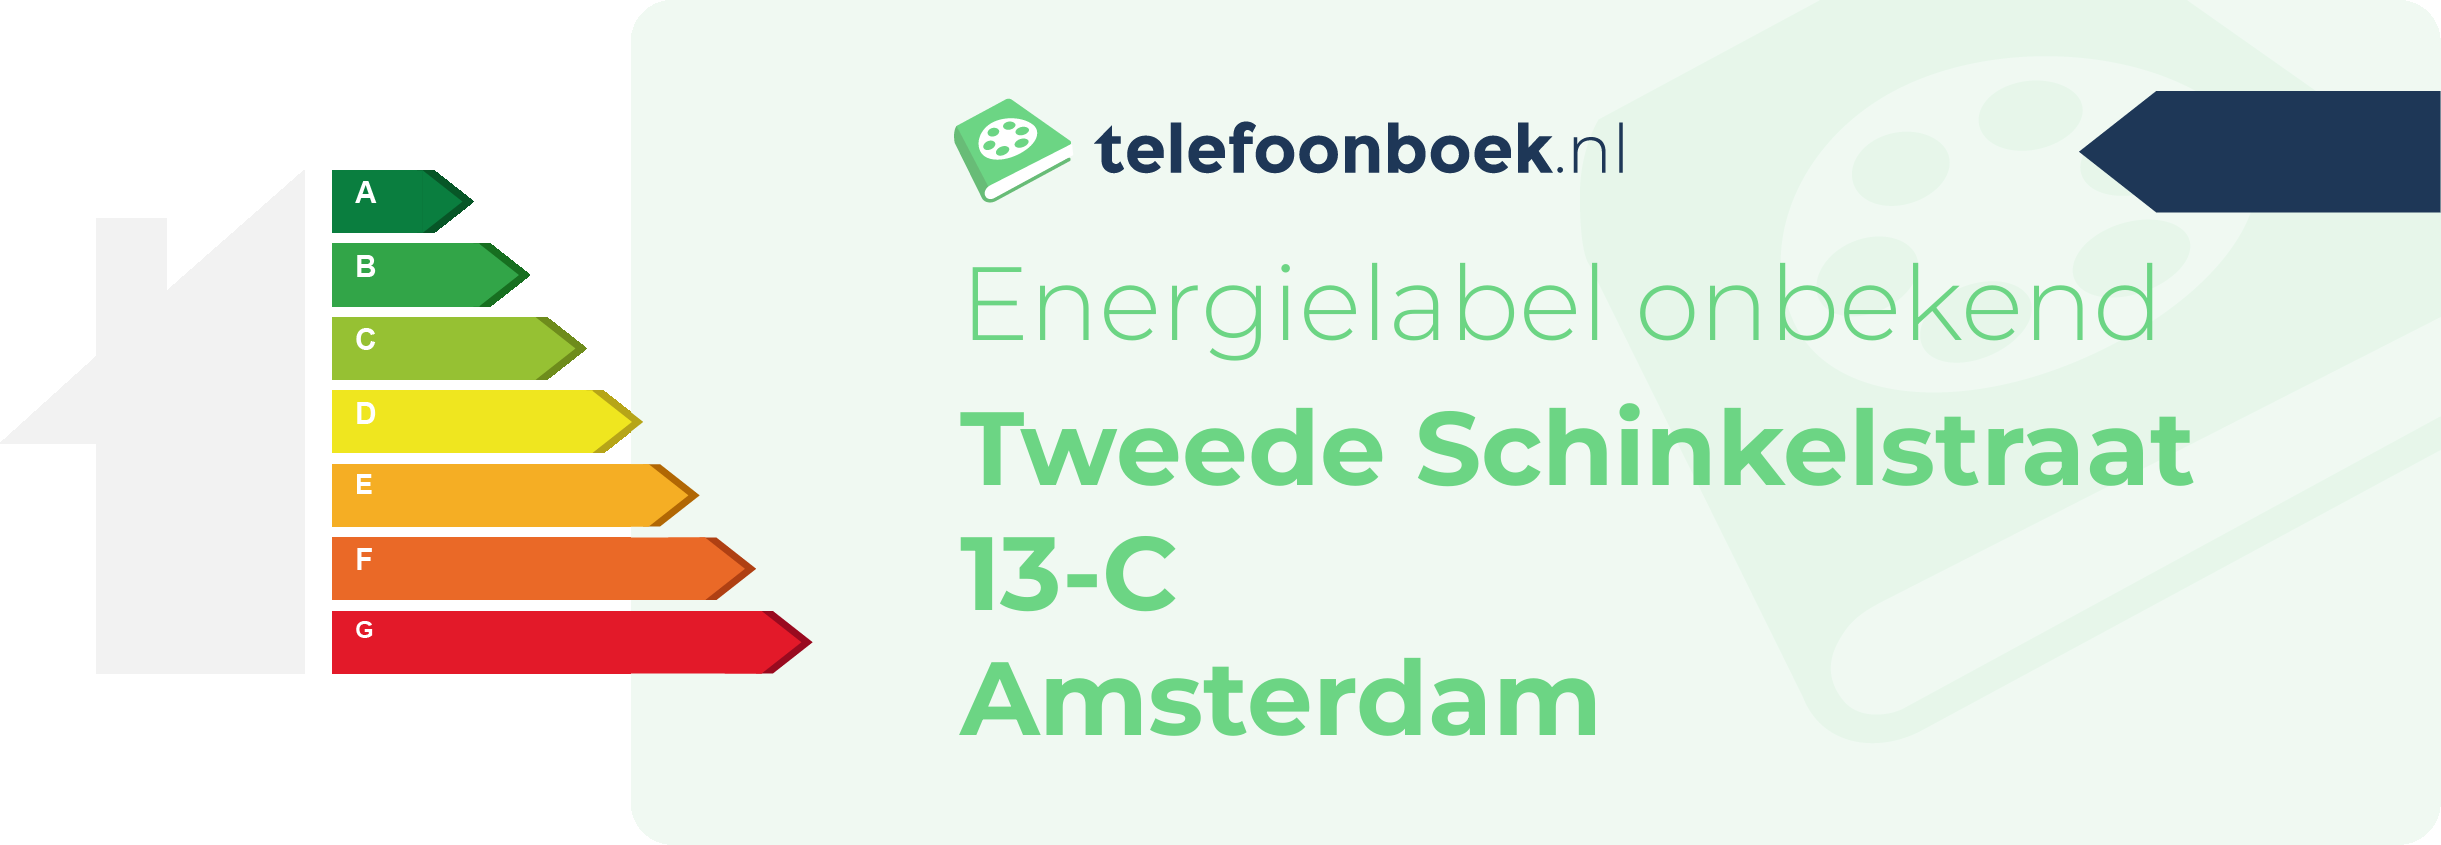 Energielabel Tweede Schinkelstraat 13-C Amsterdam